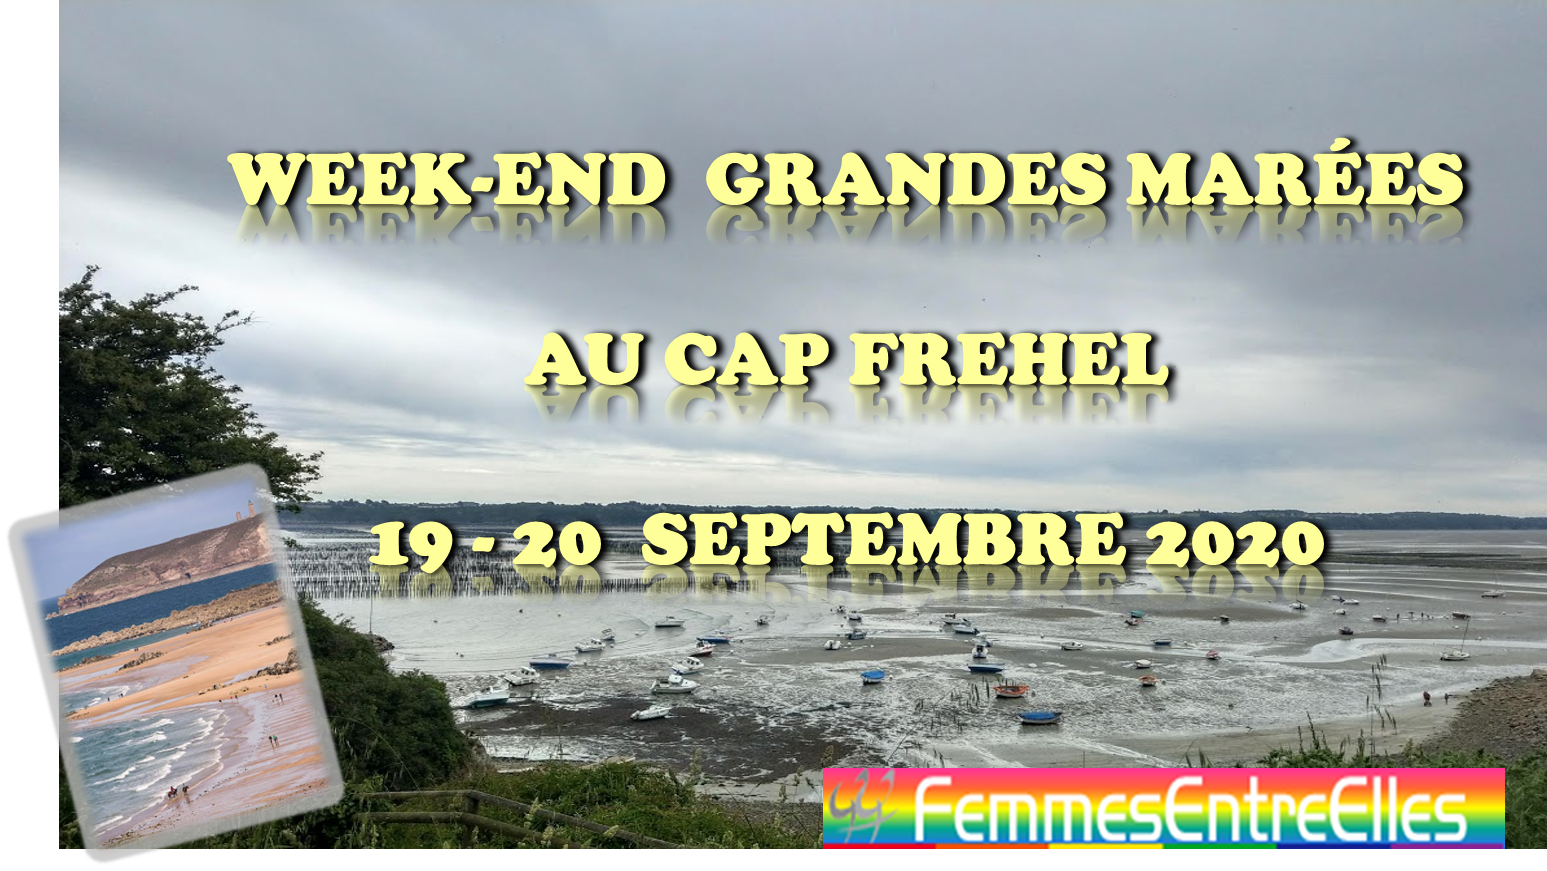 Week-end grandes marées au cap Frehel les 19 & 20 Septembre 2020